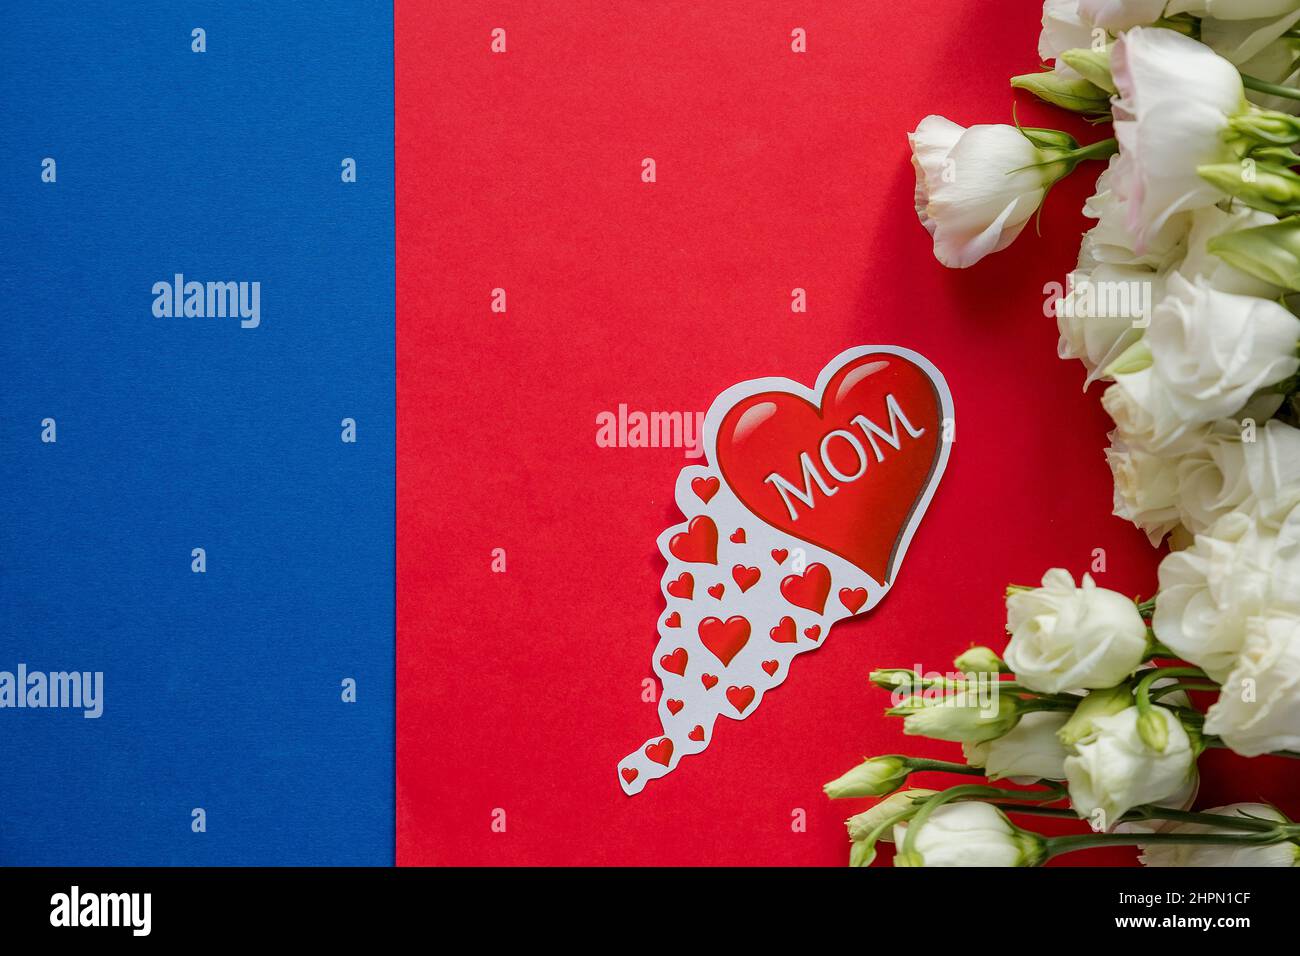 Happy Mother's Day Grußkarte mit Frühlingsblumen und dekorativem Herz auf rot-blauem Hintergrund.Design-Konzept - Draufsicht auf Strauß schön Stockfoto